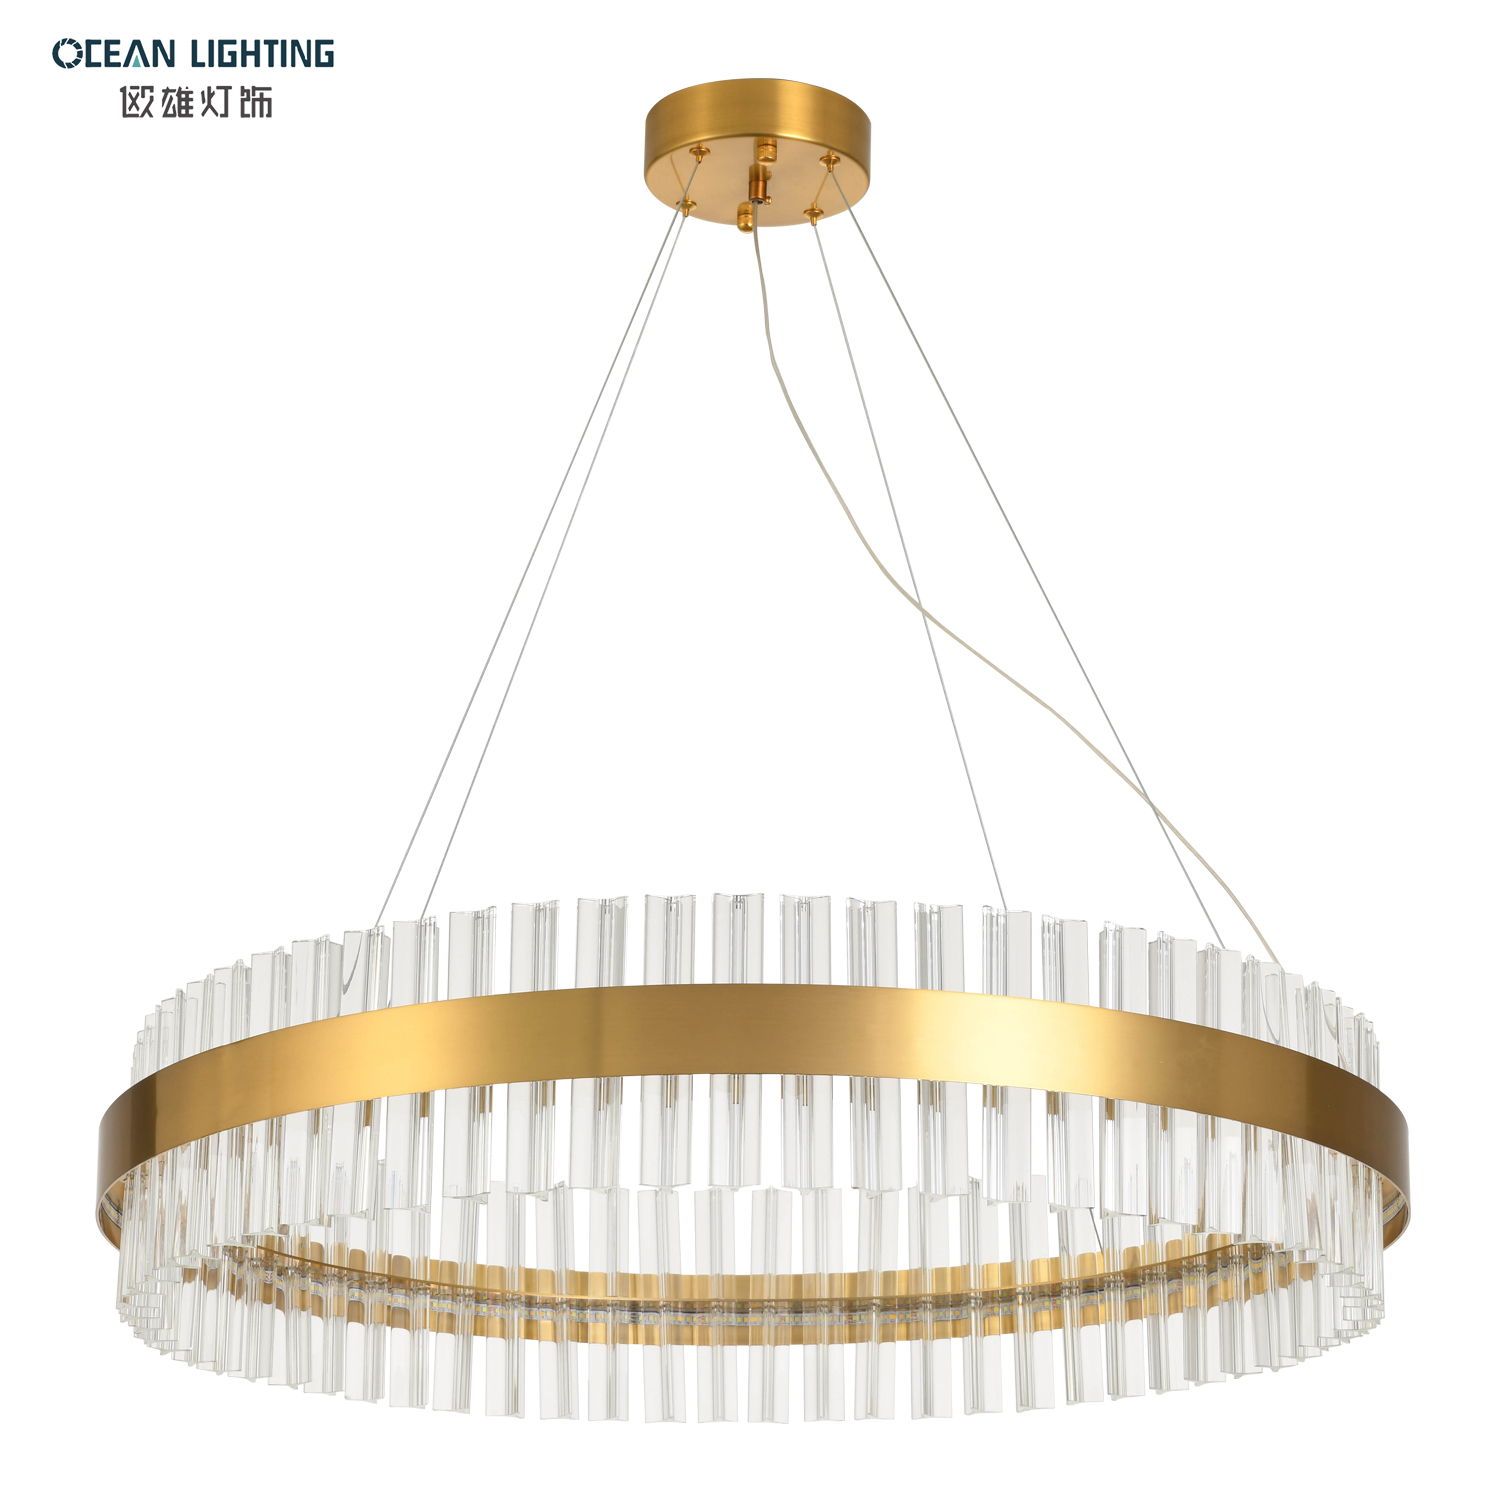 OCEAN LAMP Gold Led Modern Glass Chadnelier Lighting